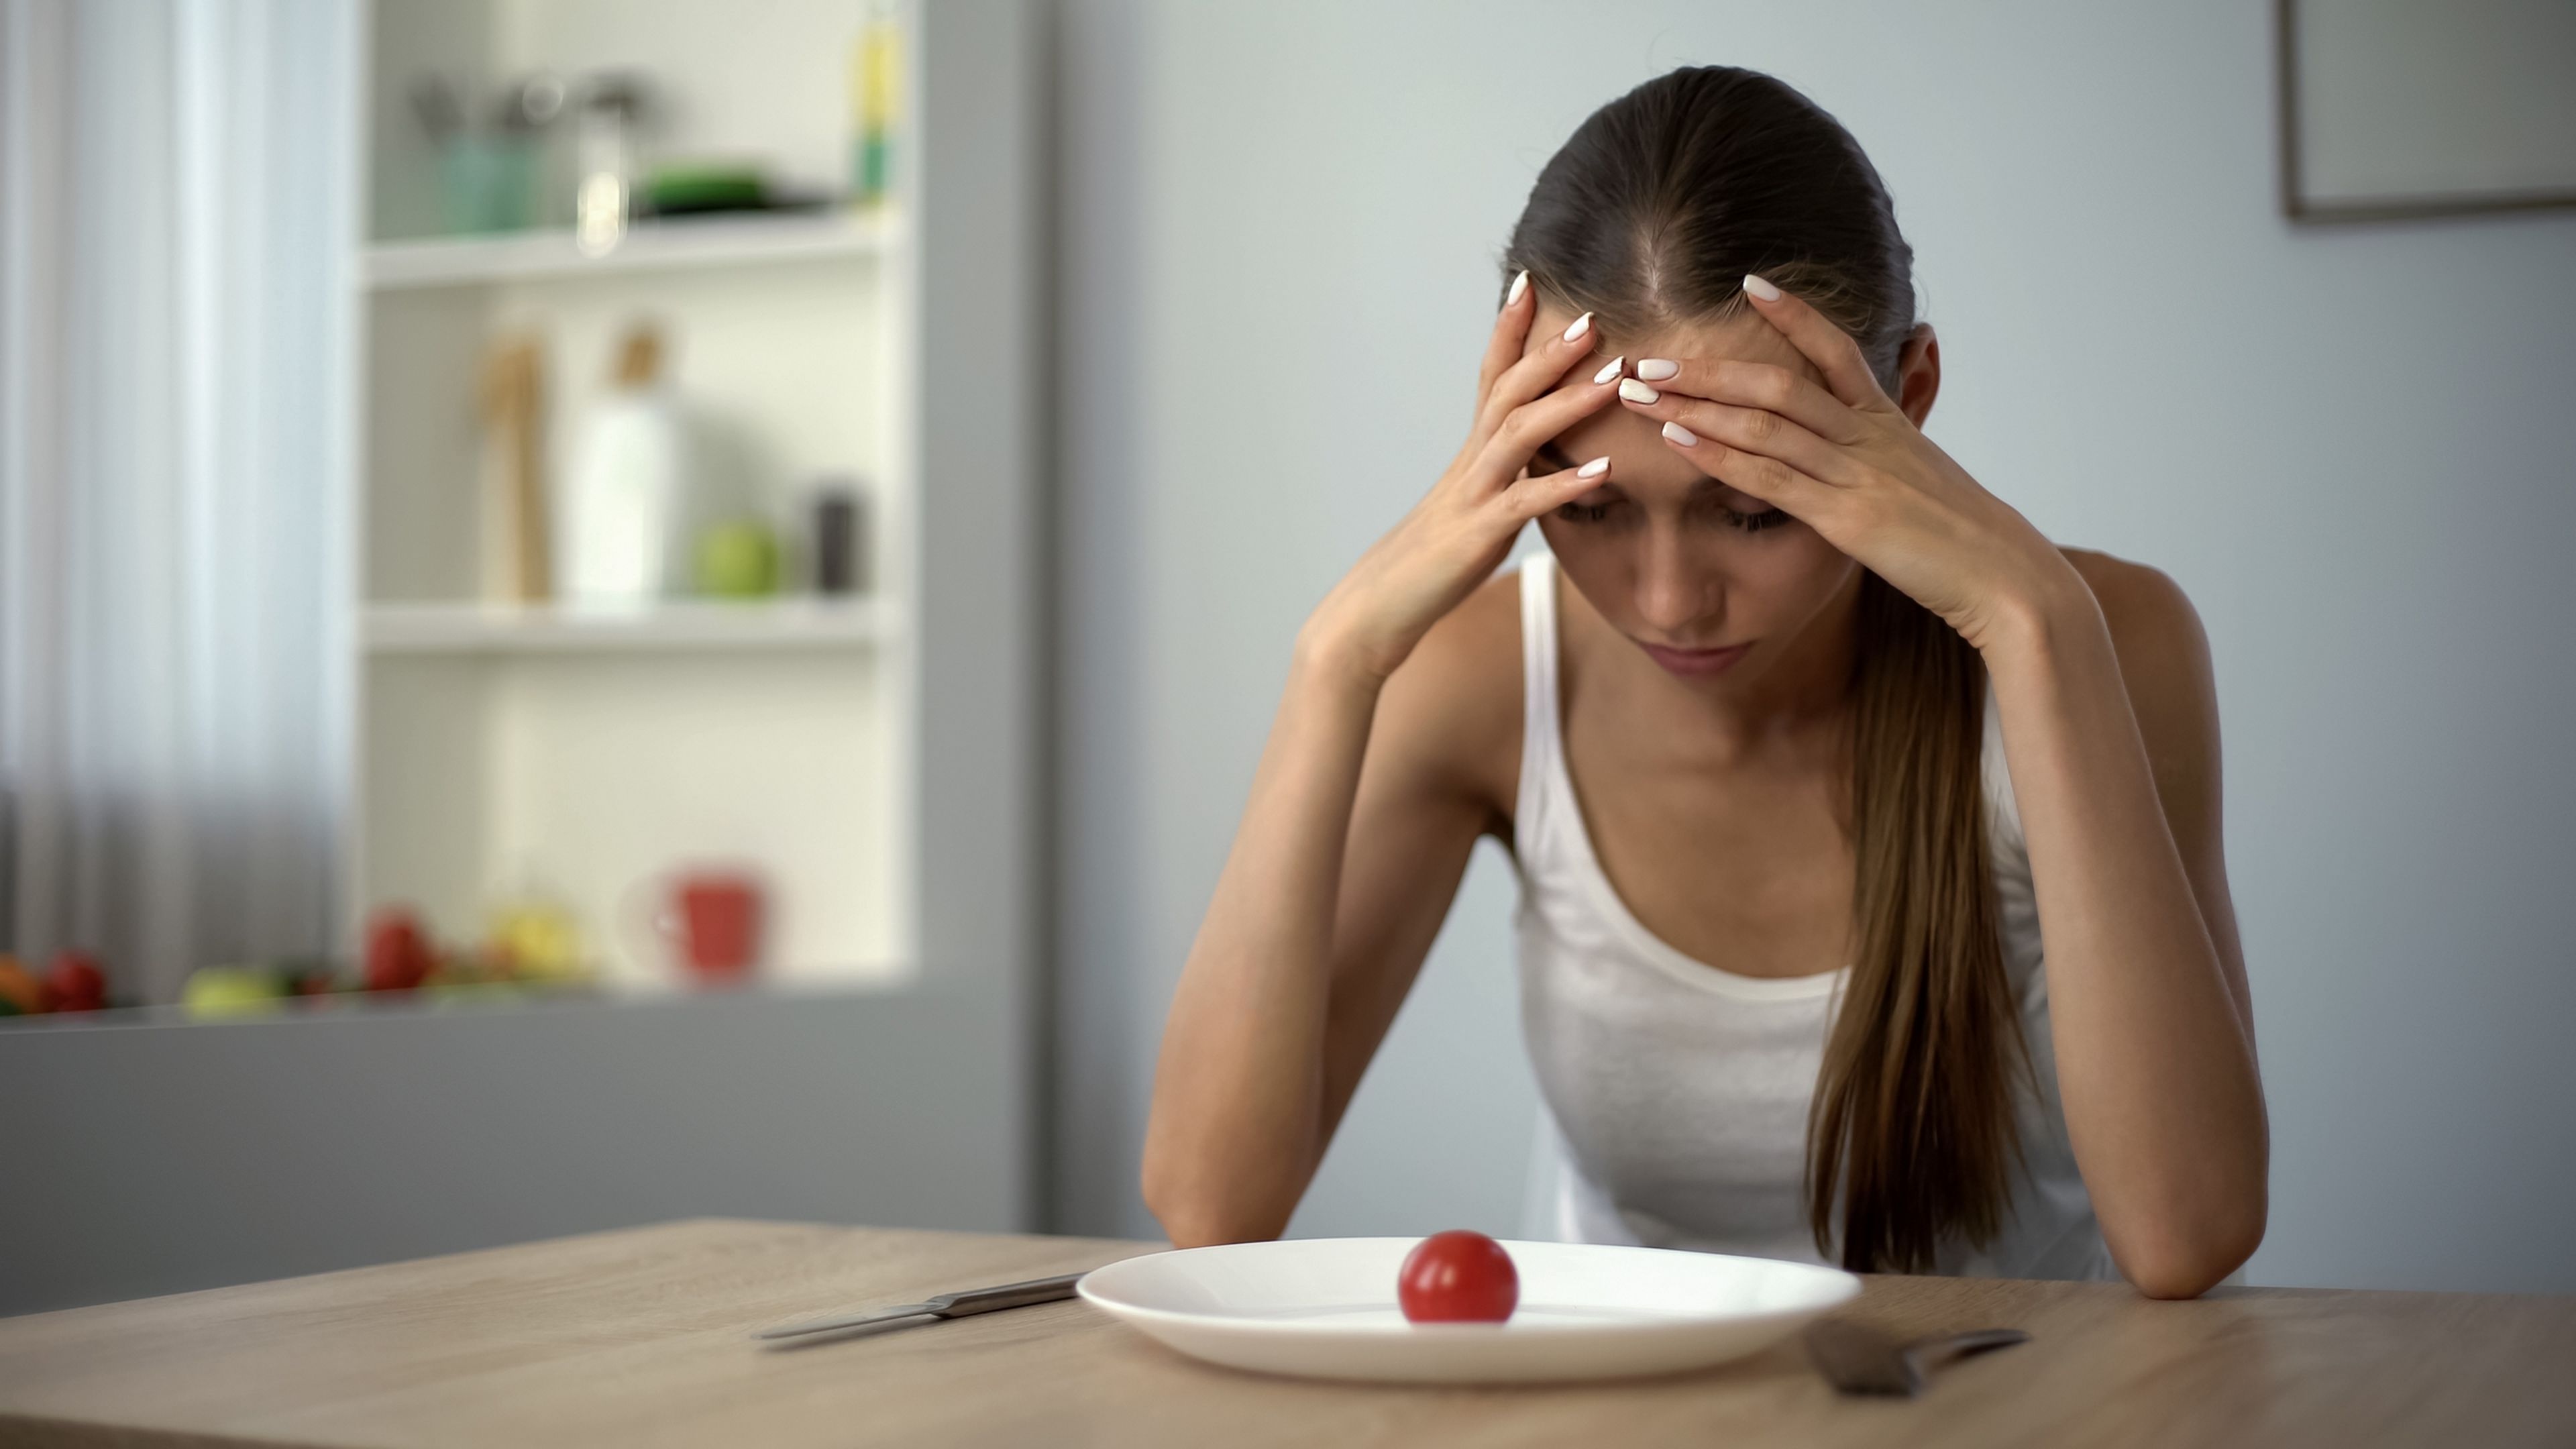 Dietas muy perjudiciales para la salud que los expertos desaconsejan y que deberías evitar hacer